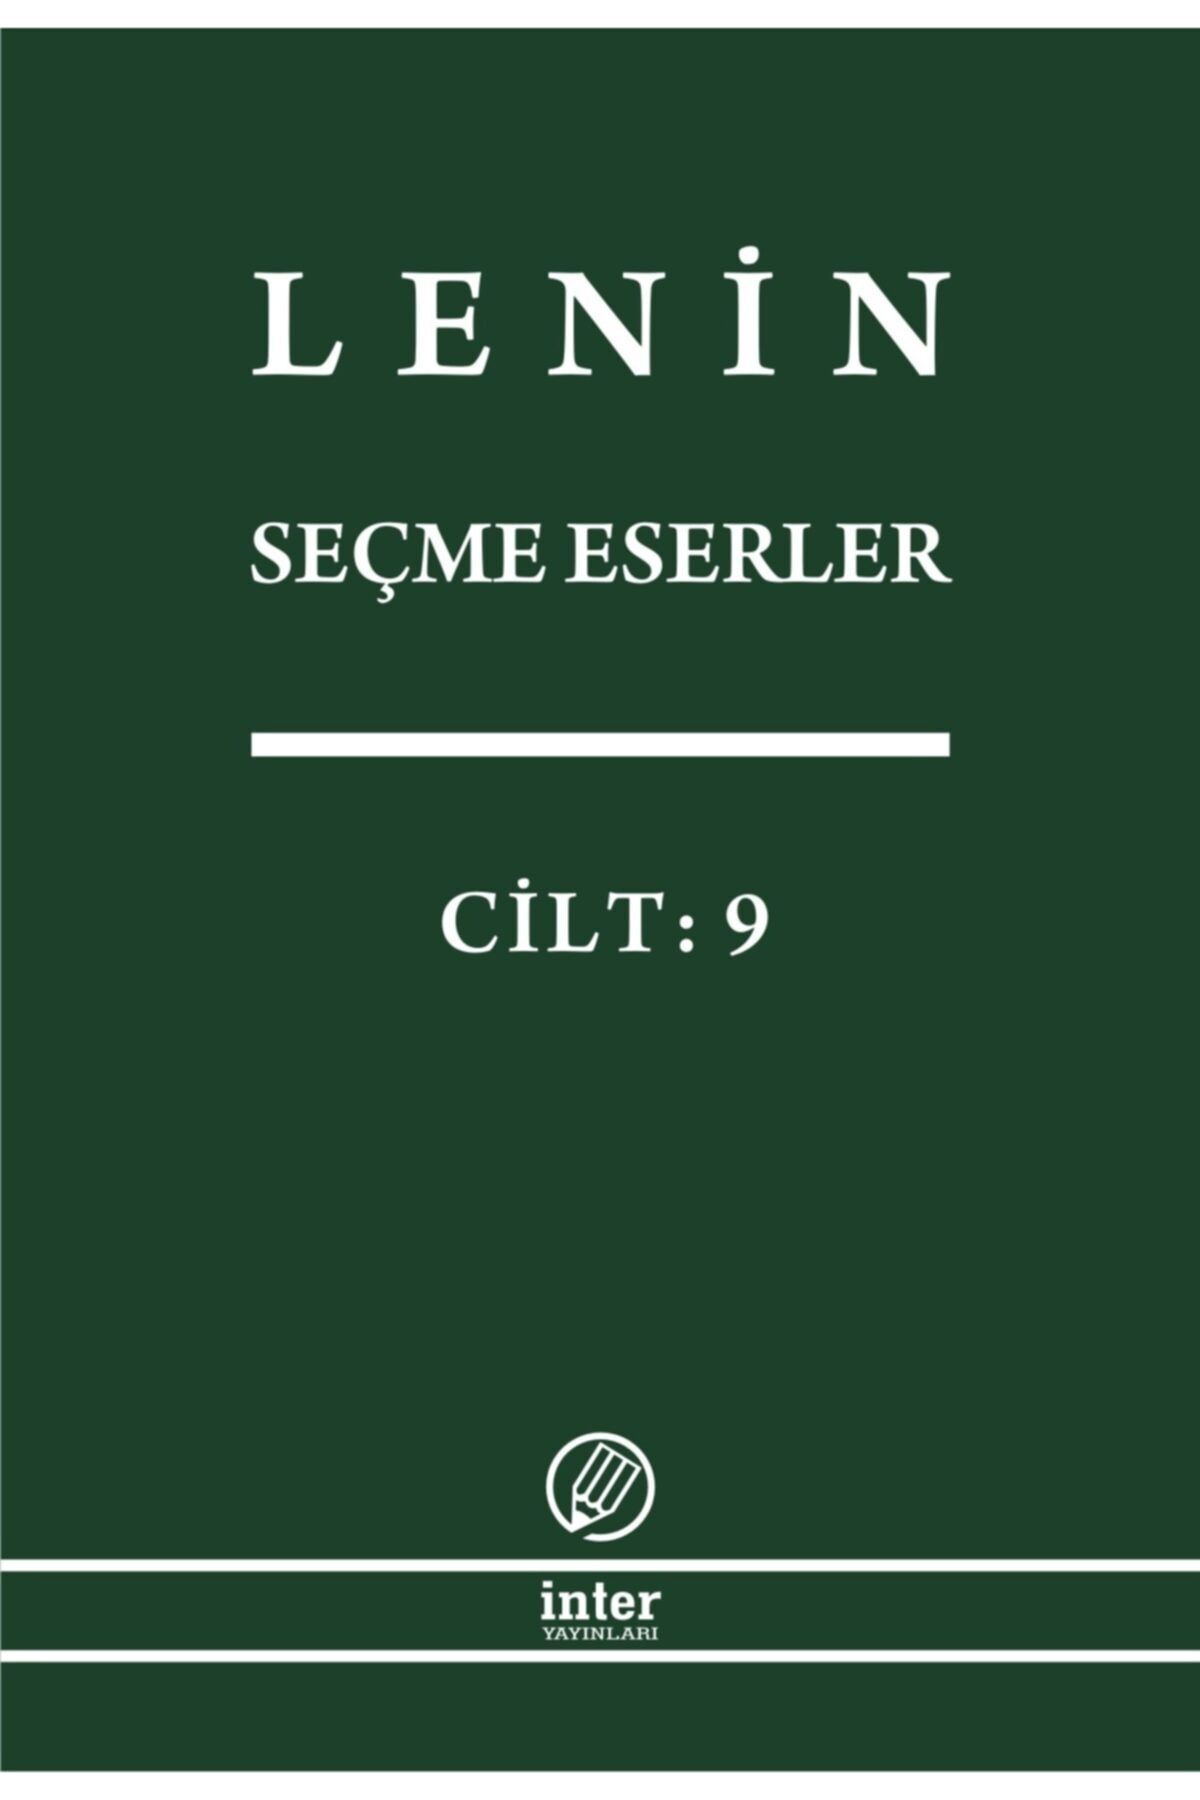 İnter Yayınları Lenin Seçme Eserler Cilt 9